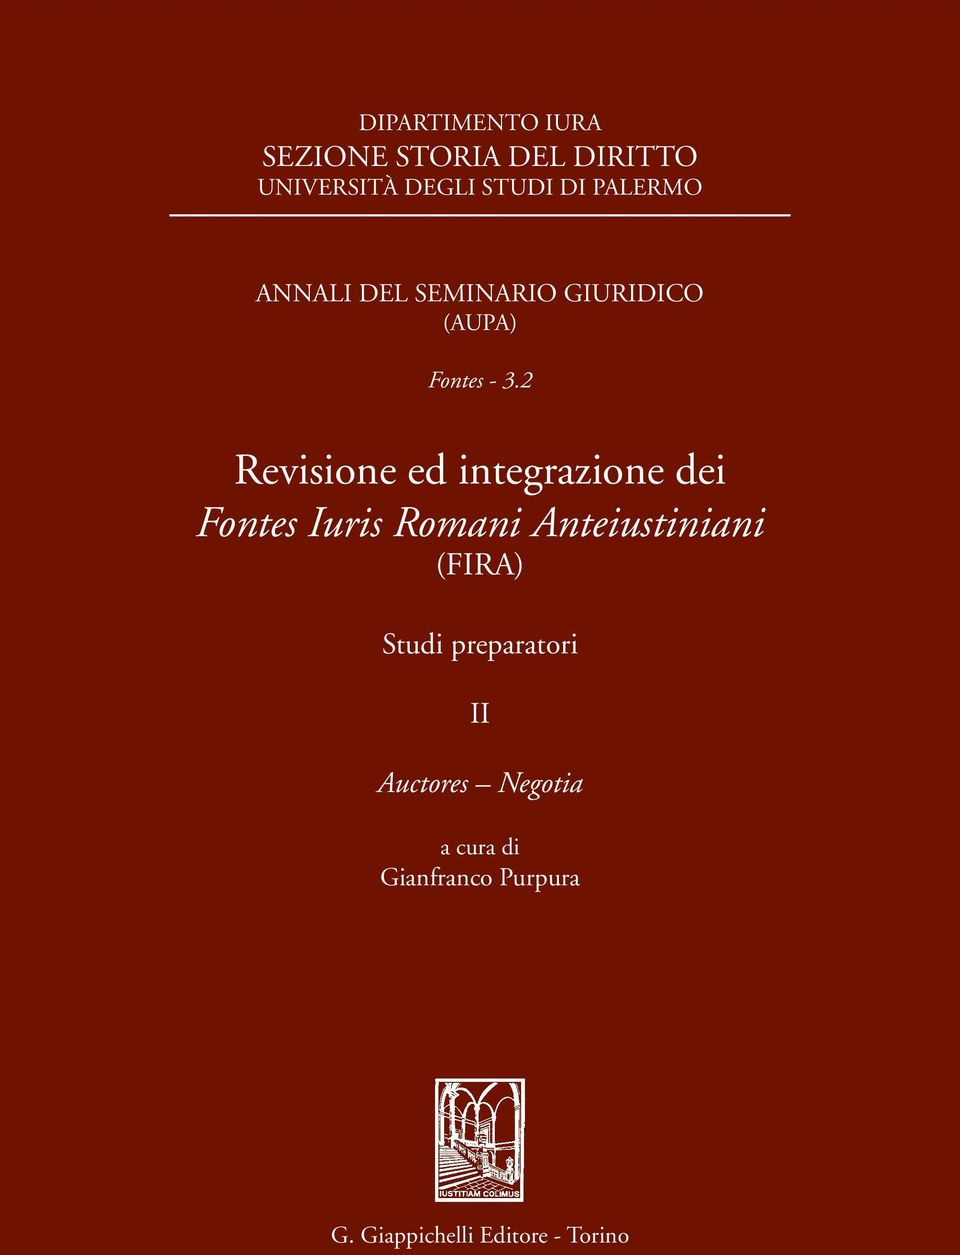 2 Revisione ed integrazione dei Fontes Iuris Romani Anteiustiniani (FIRA)